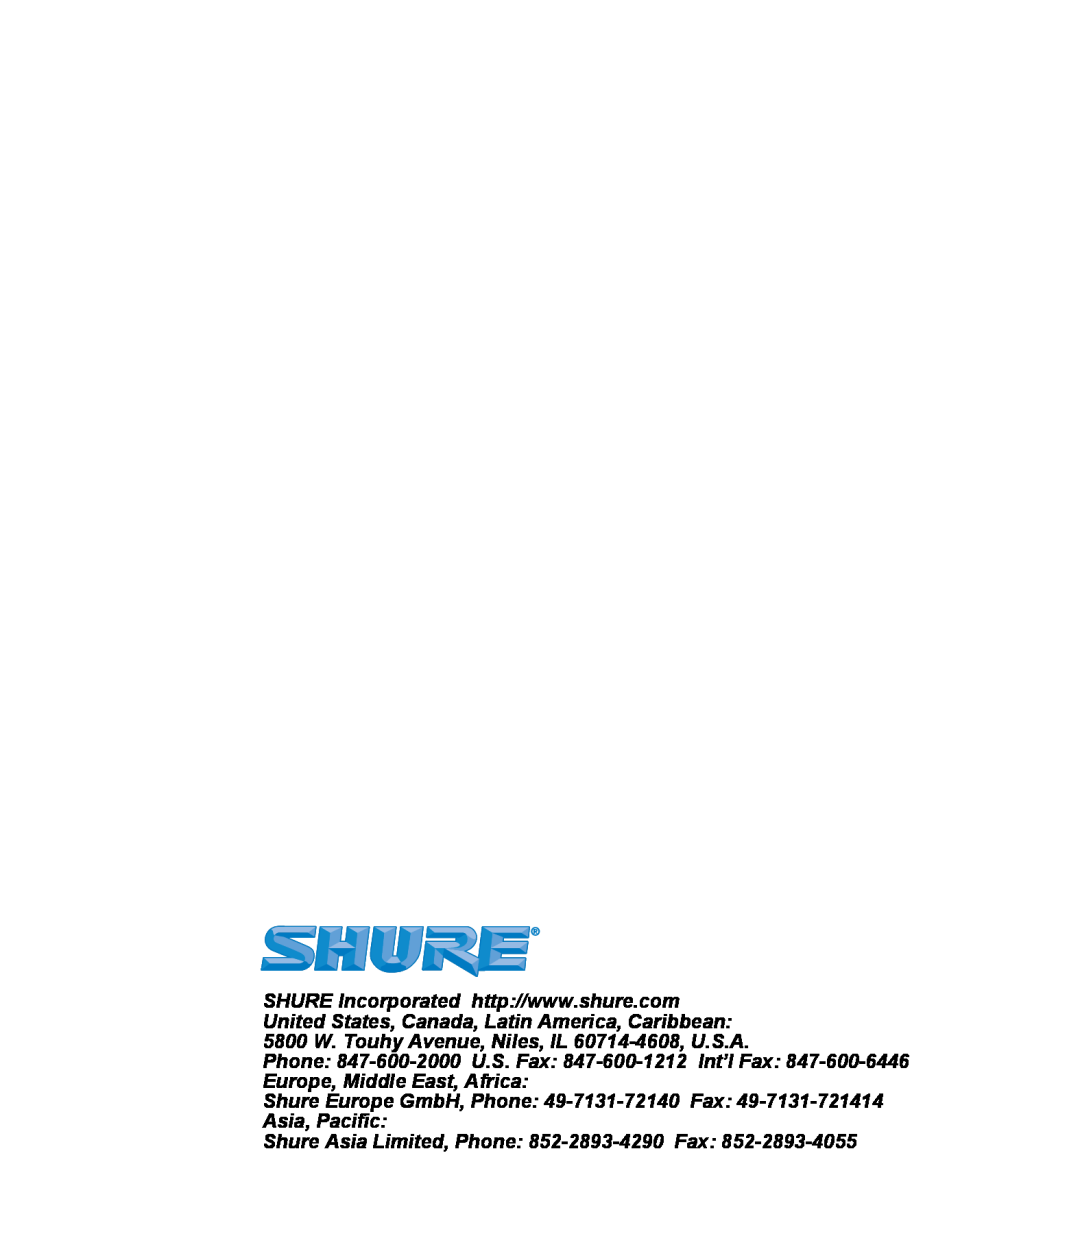 Shure E2, E5, E3 manual Shure Asia Limited, Phone 852-2893-4290Fax 